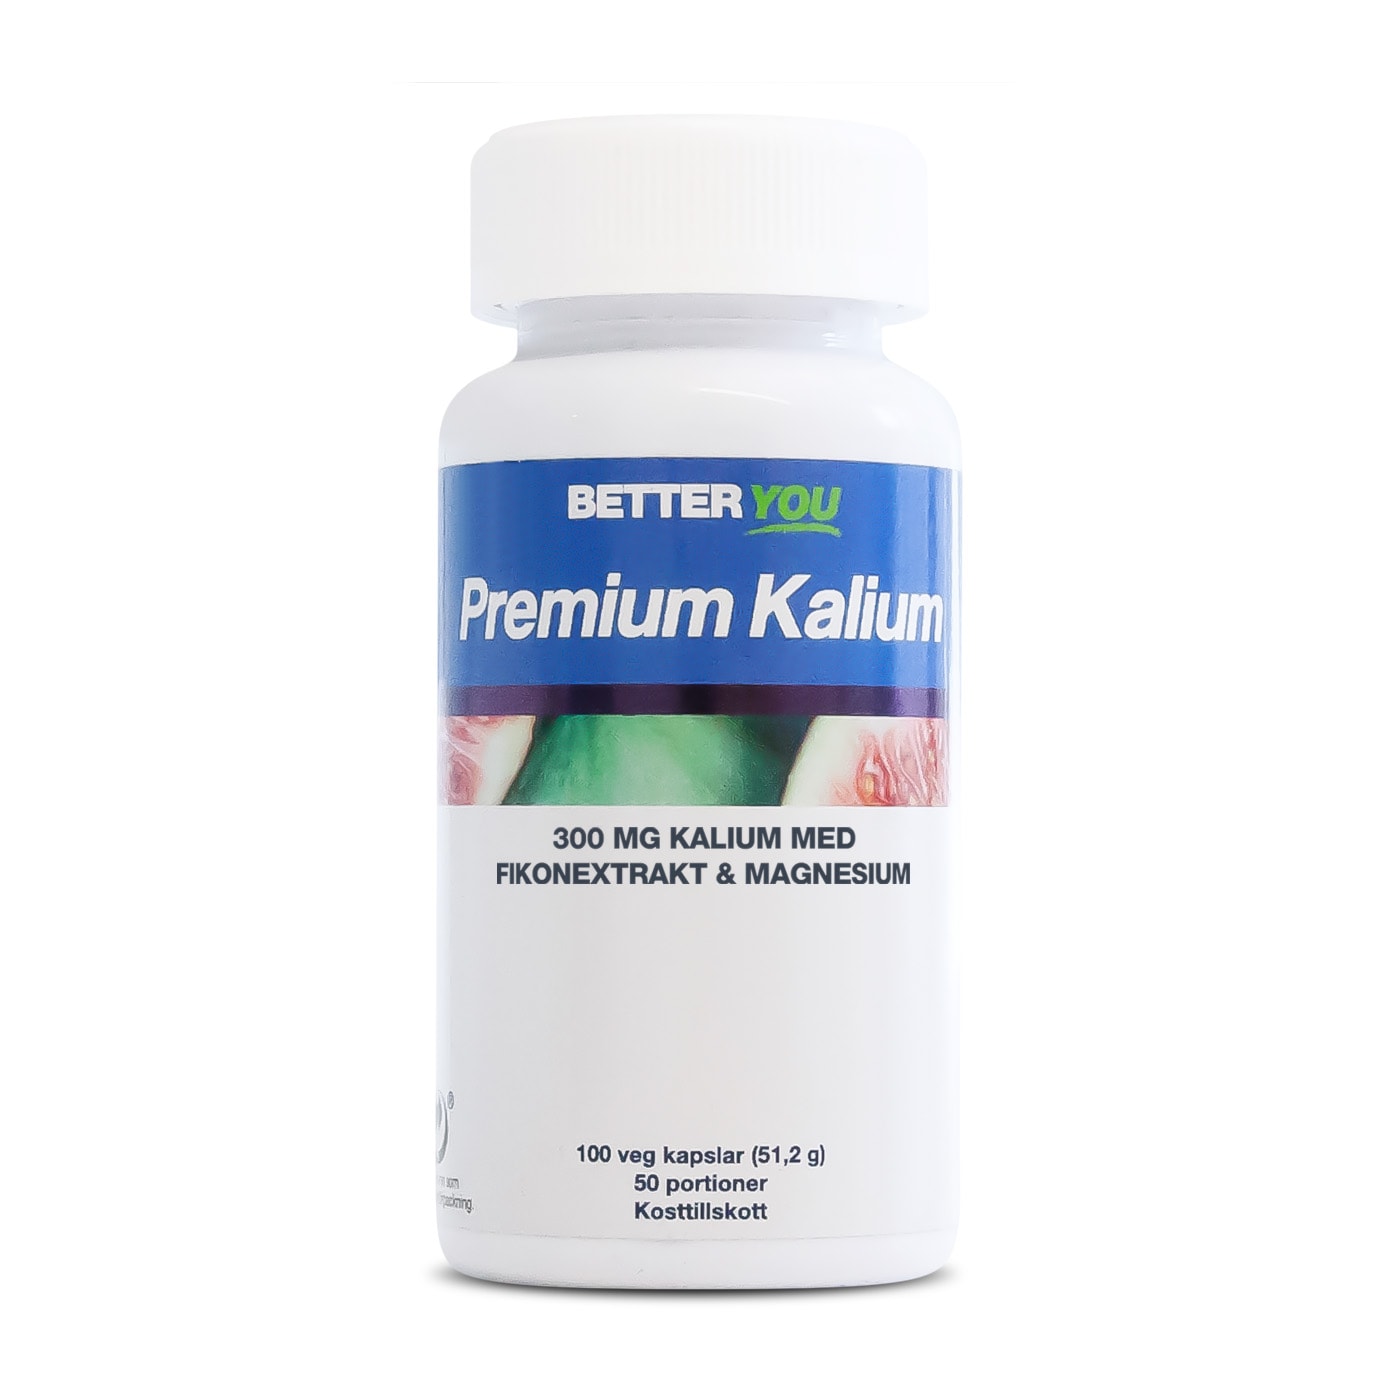 Premium Kalium